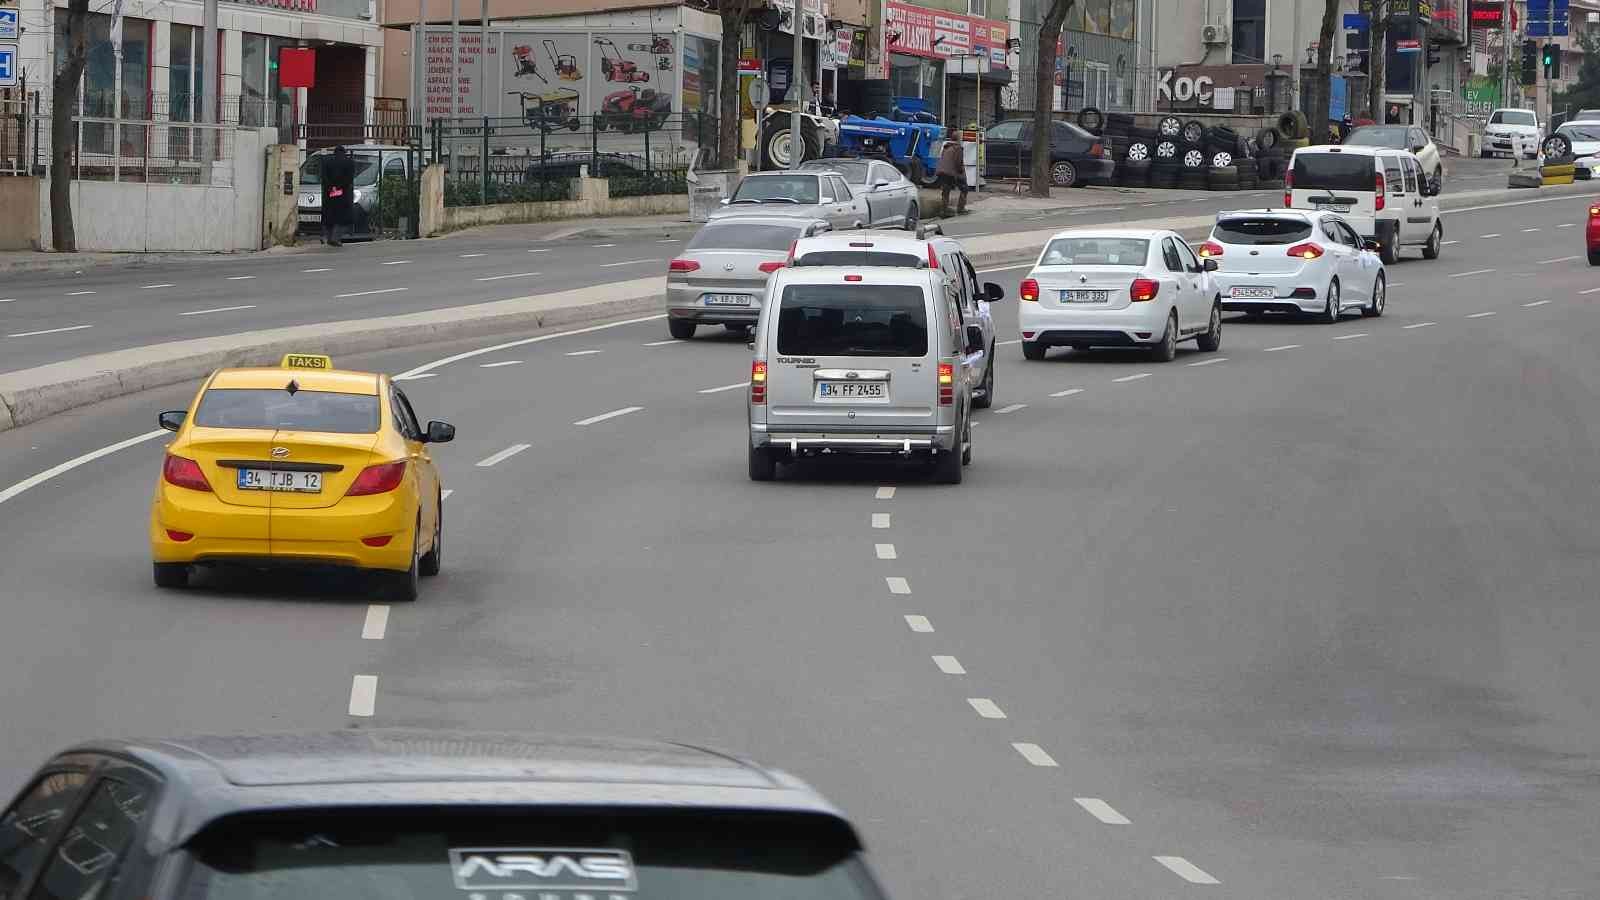 Pendik’te otomobil çarptığı kadının metrelerce sürüklendiği anlar kamerada #istanbul